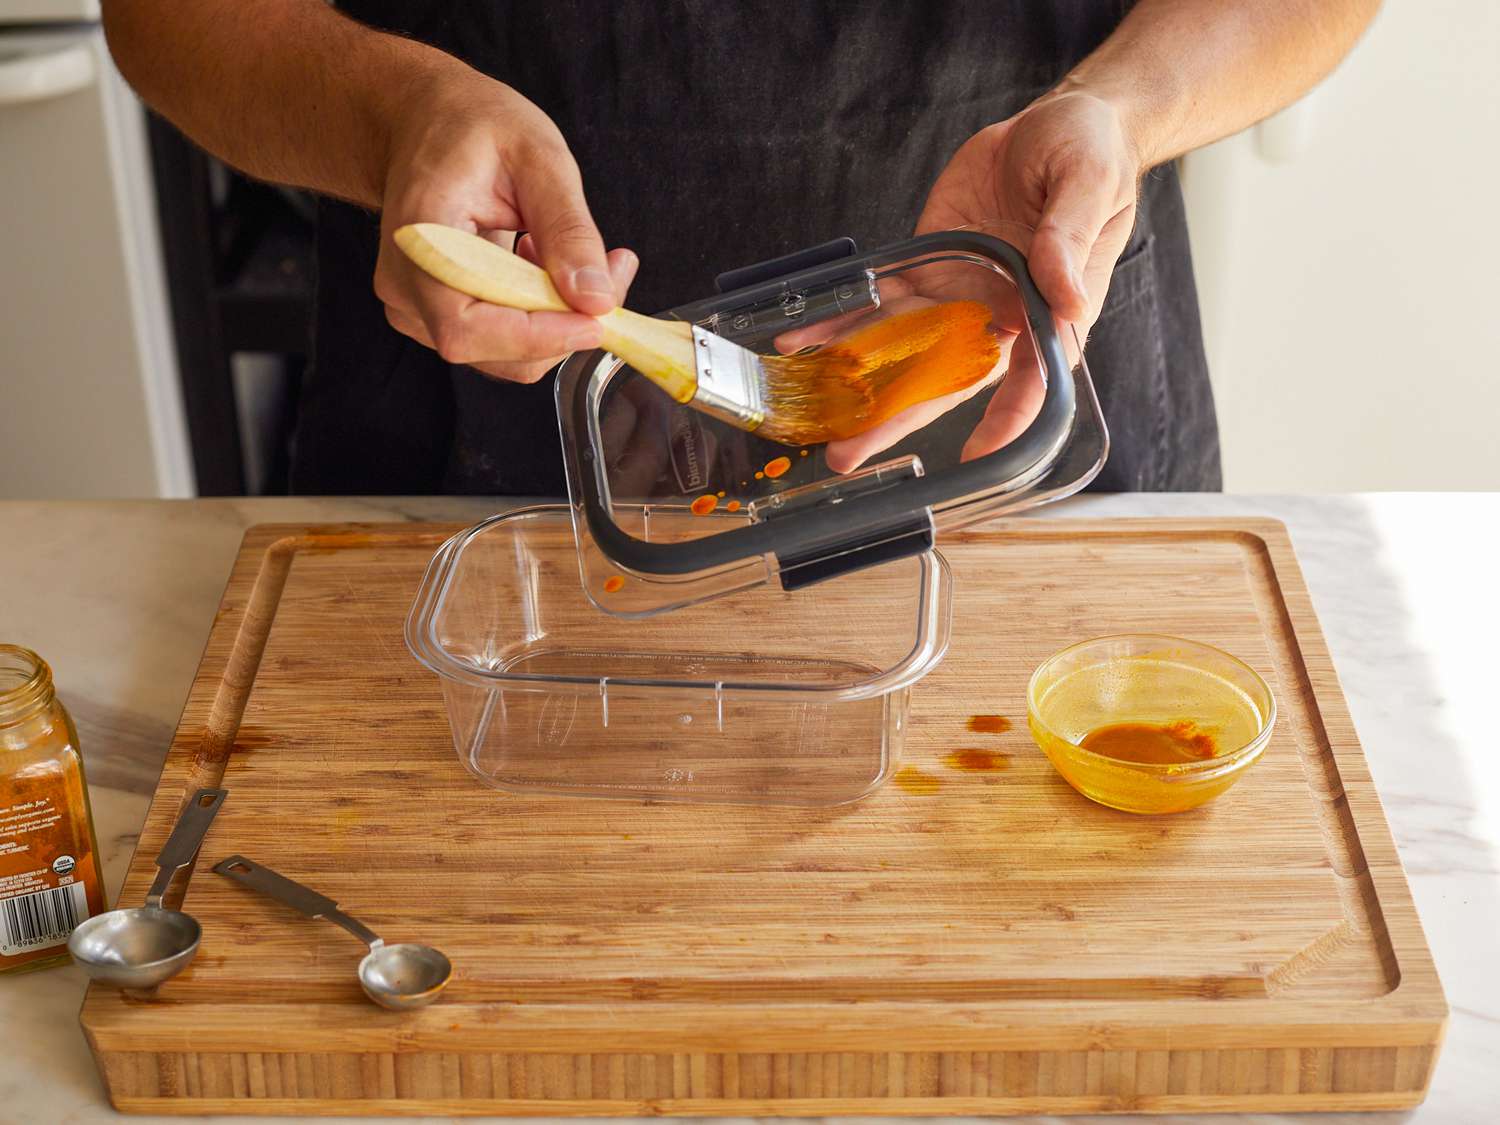 一只手正在用糕点刷将油和姜黄的混合物涂在食品储存容器的盖子上